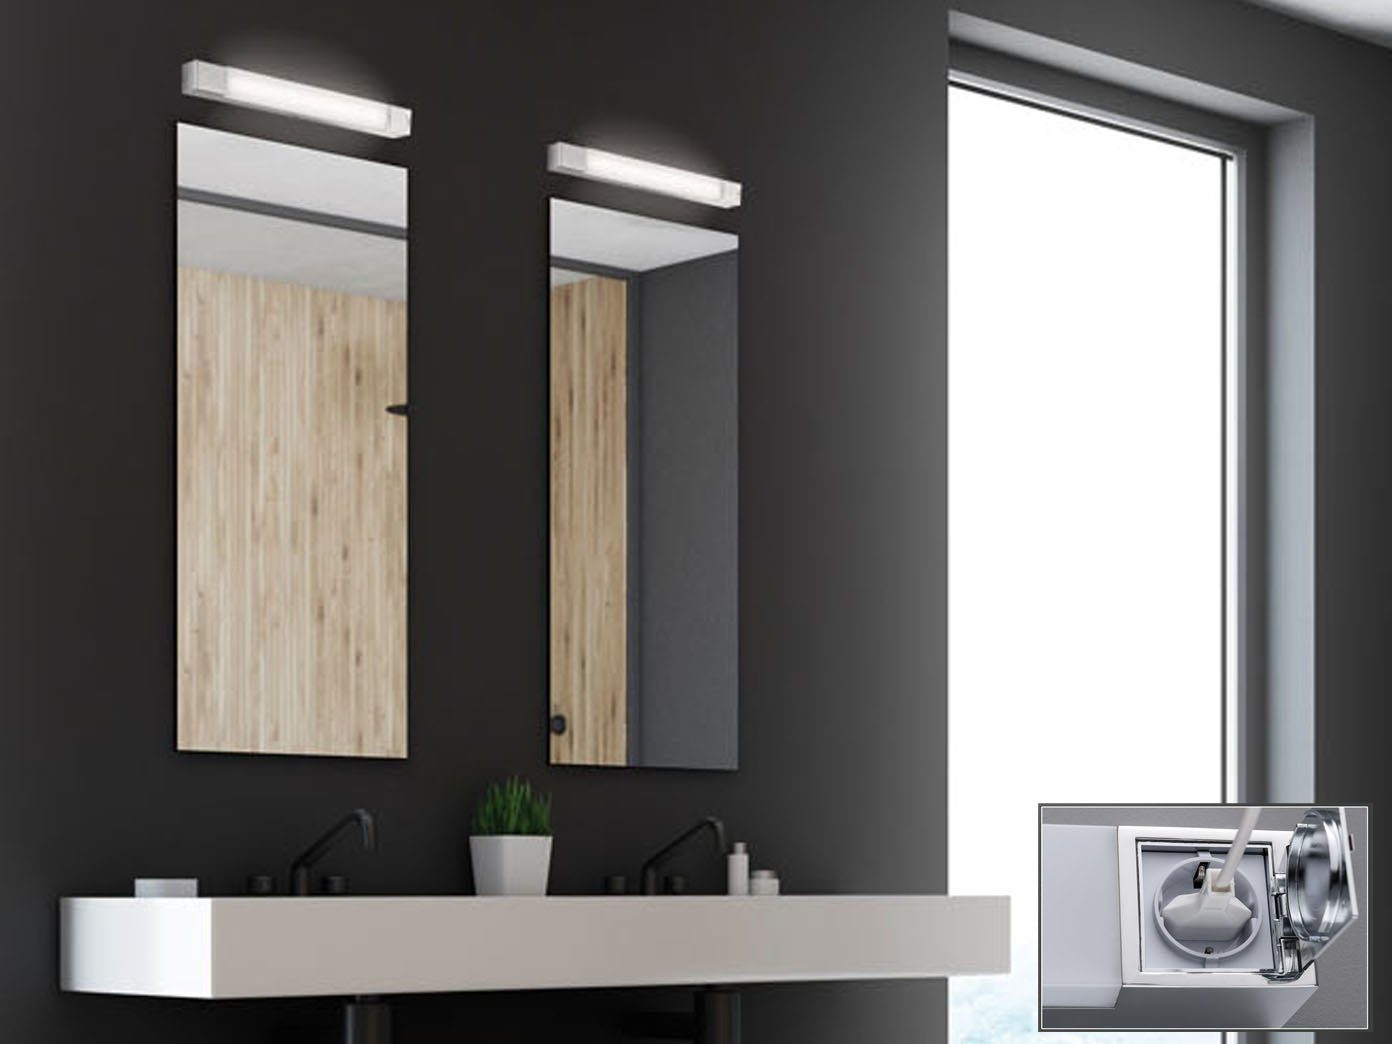 FISCHER & HONSEL Spiegelleuchte, 2x Schminklicht Wandleuchten mit Steckdose  als SET fürs Badezimmer, Schminklampen seitlich 60,5cm, indirekte  Badleuchten zur modernen Spiegel Beleuchtung